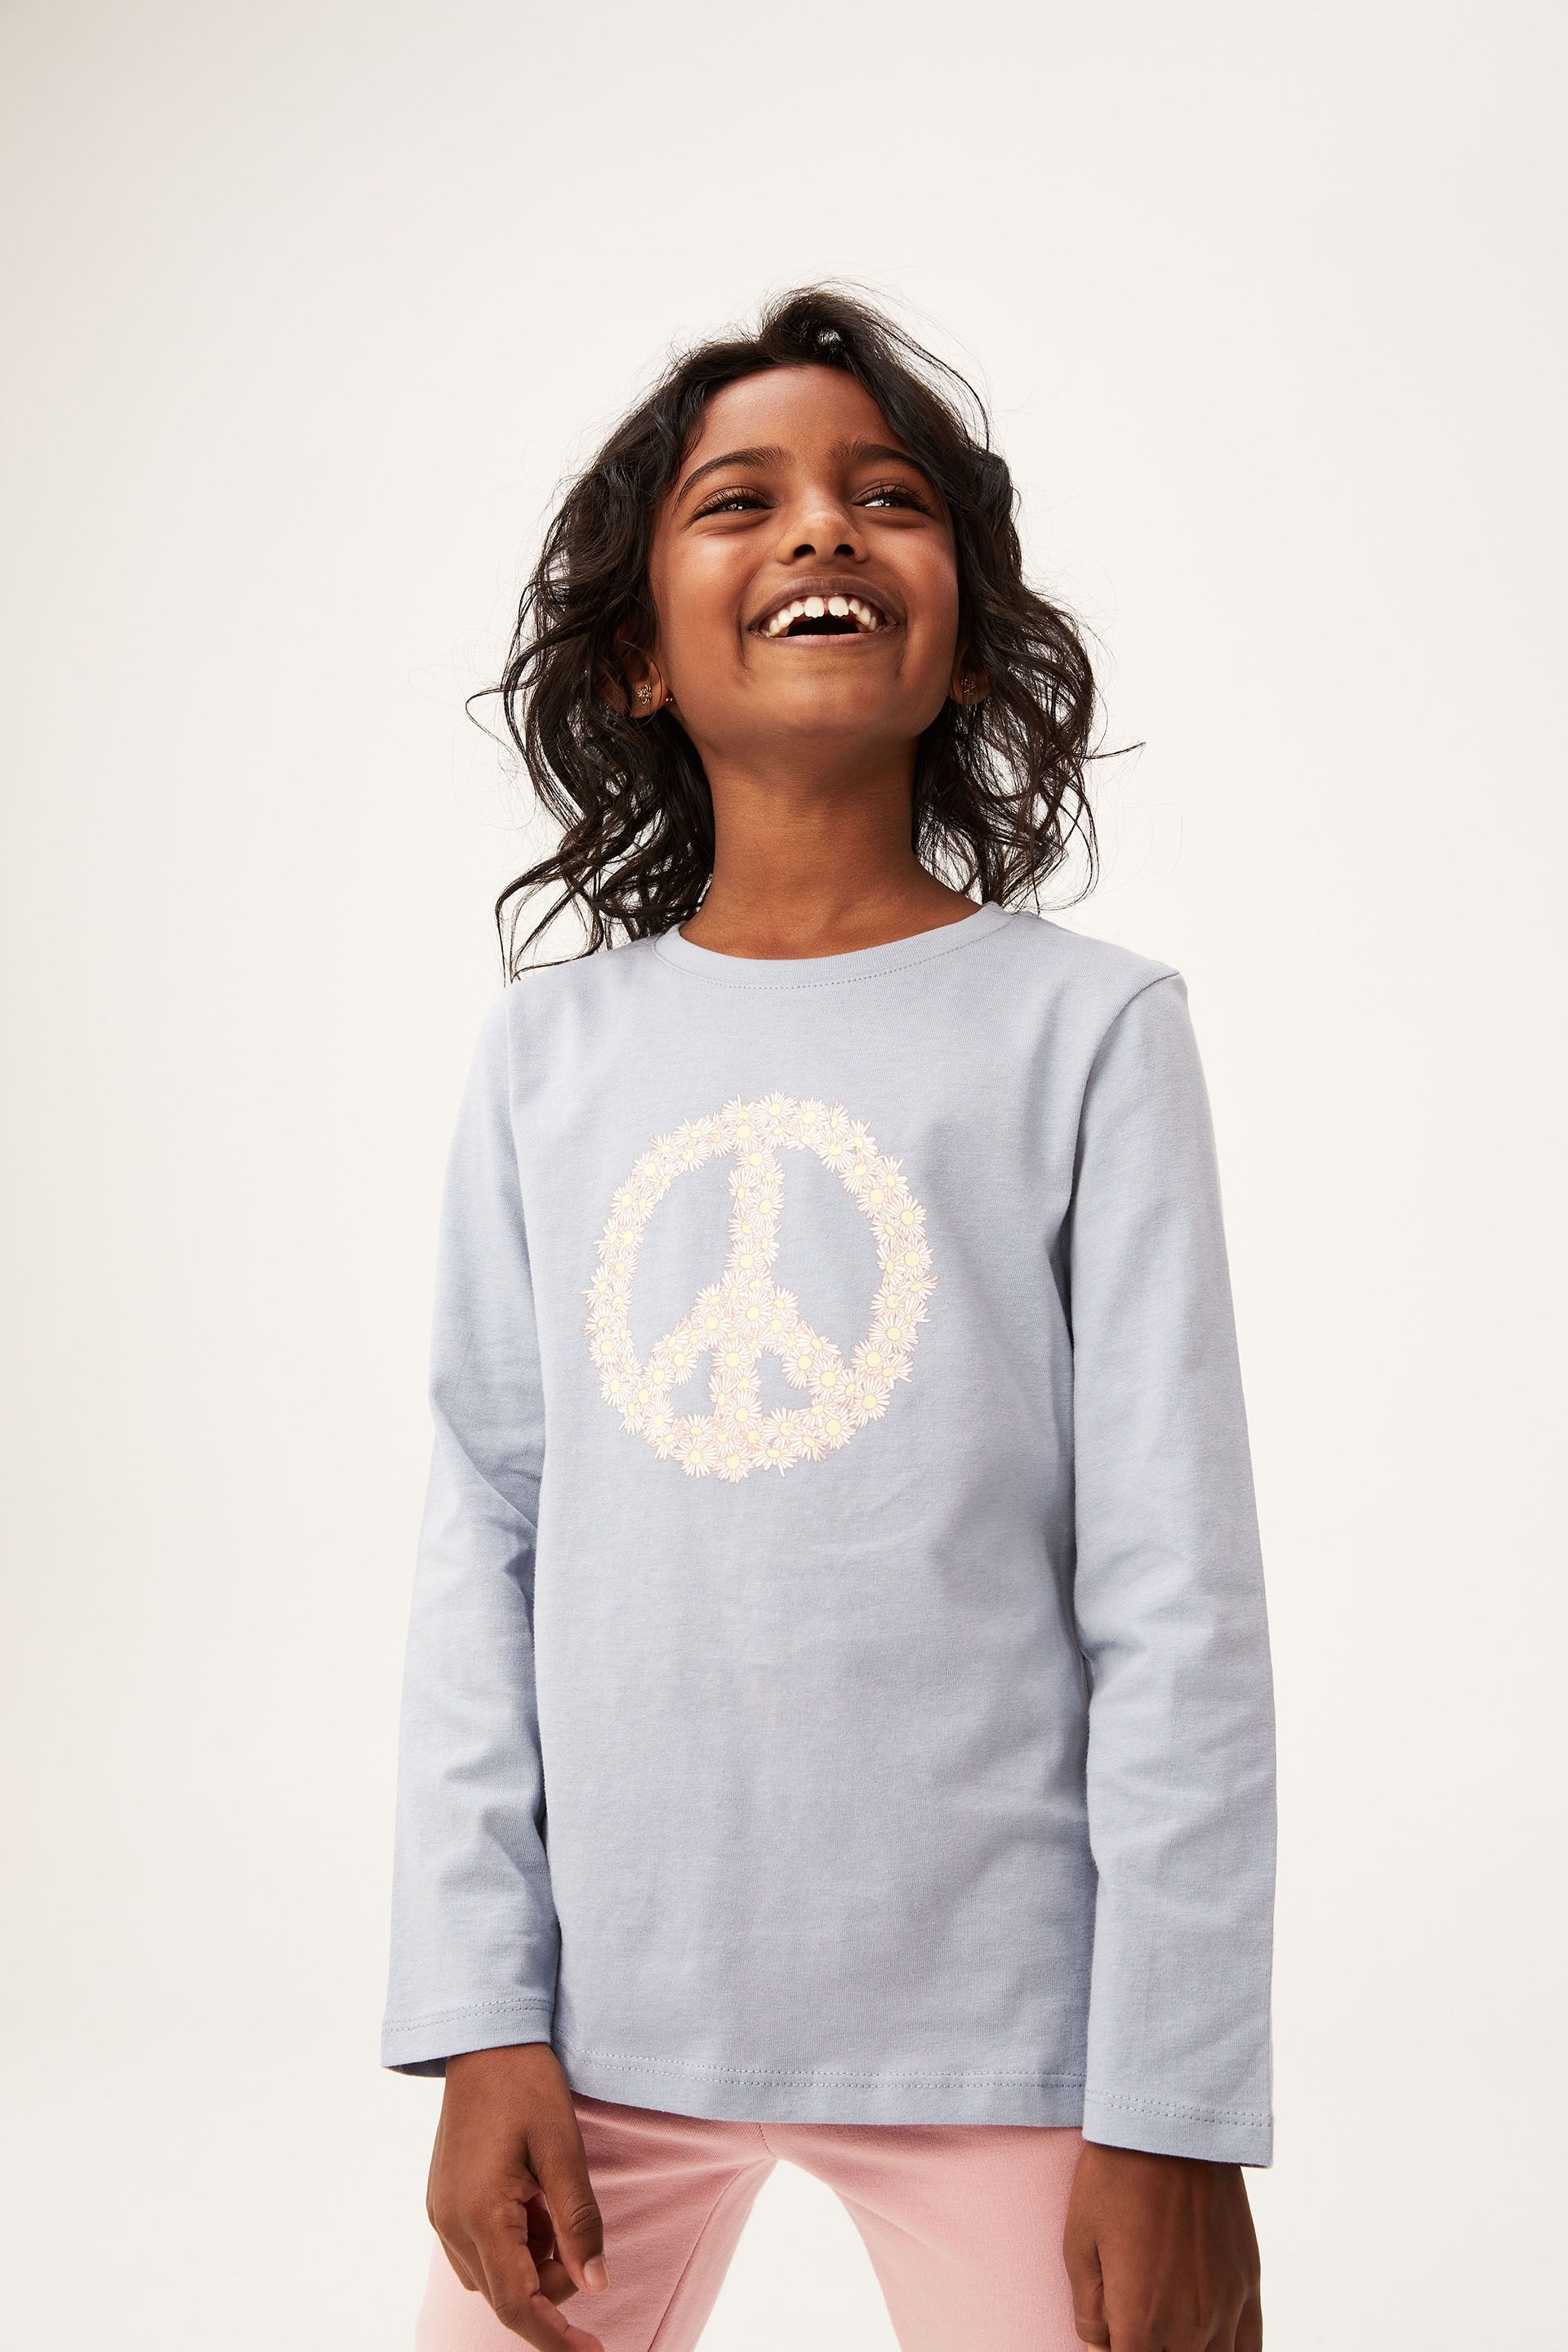 Cotton On Kids - Penelope Long Sleeve Tee - Dusty blue/daisy peace